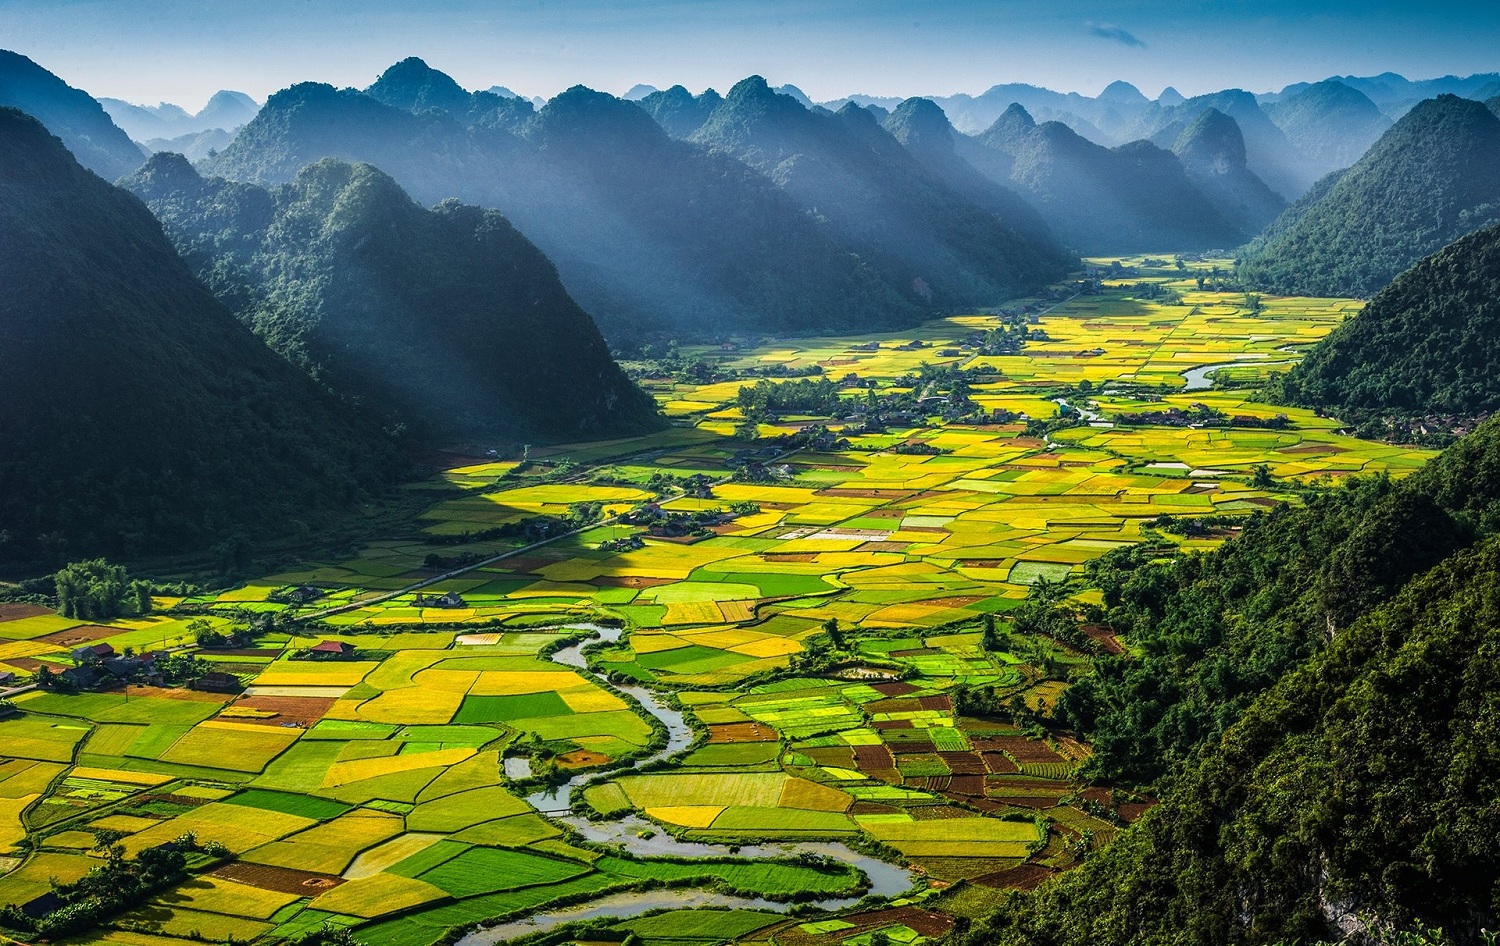 Thiên nhiên Việt Nam: Hãy cùng khám phá vẻ đẹp tinh tế của thiên nhiên Việt Nam, những cánh rừng rợp bóng, những đồng cỏ xanh ngắt và những dòng sông êm đềm. Đây là nơi mà bạn có thể tìm thấy sự bình yên và cảm nhận sức sống từ tự nhiên.